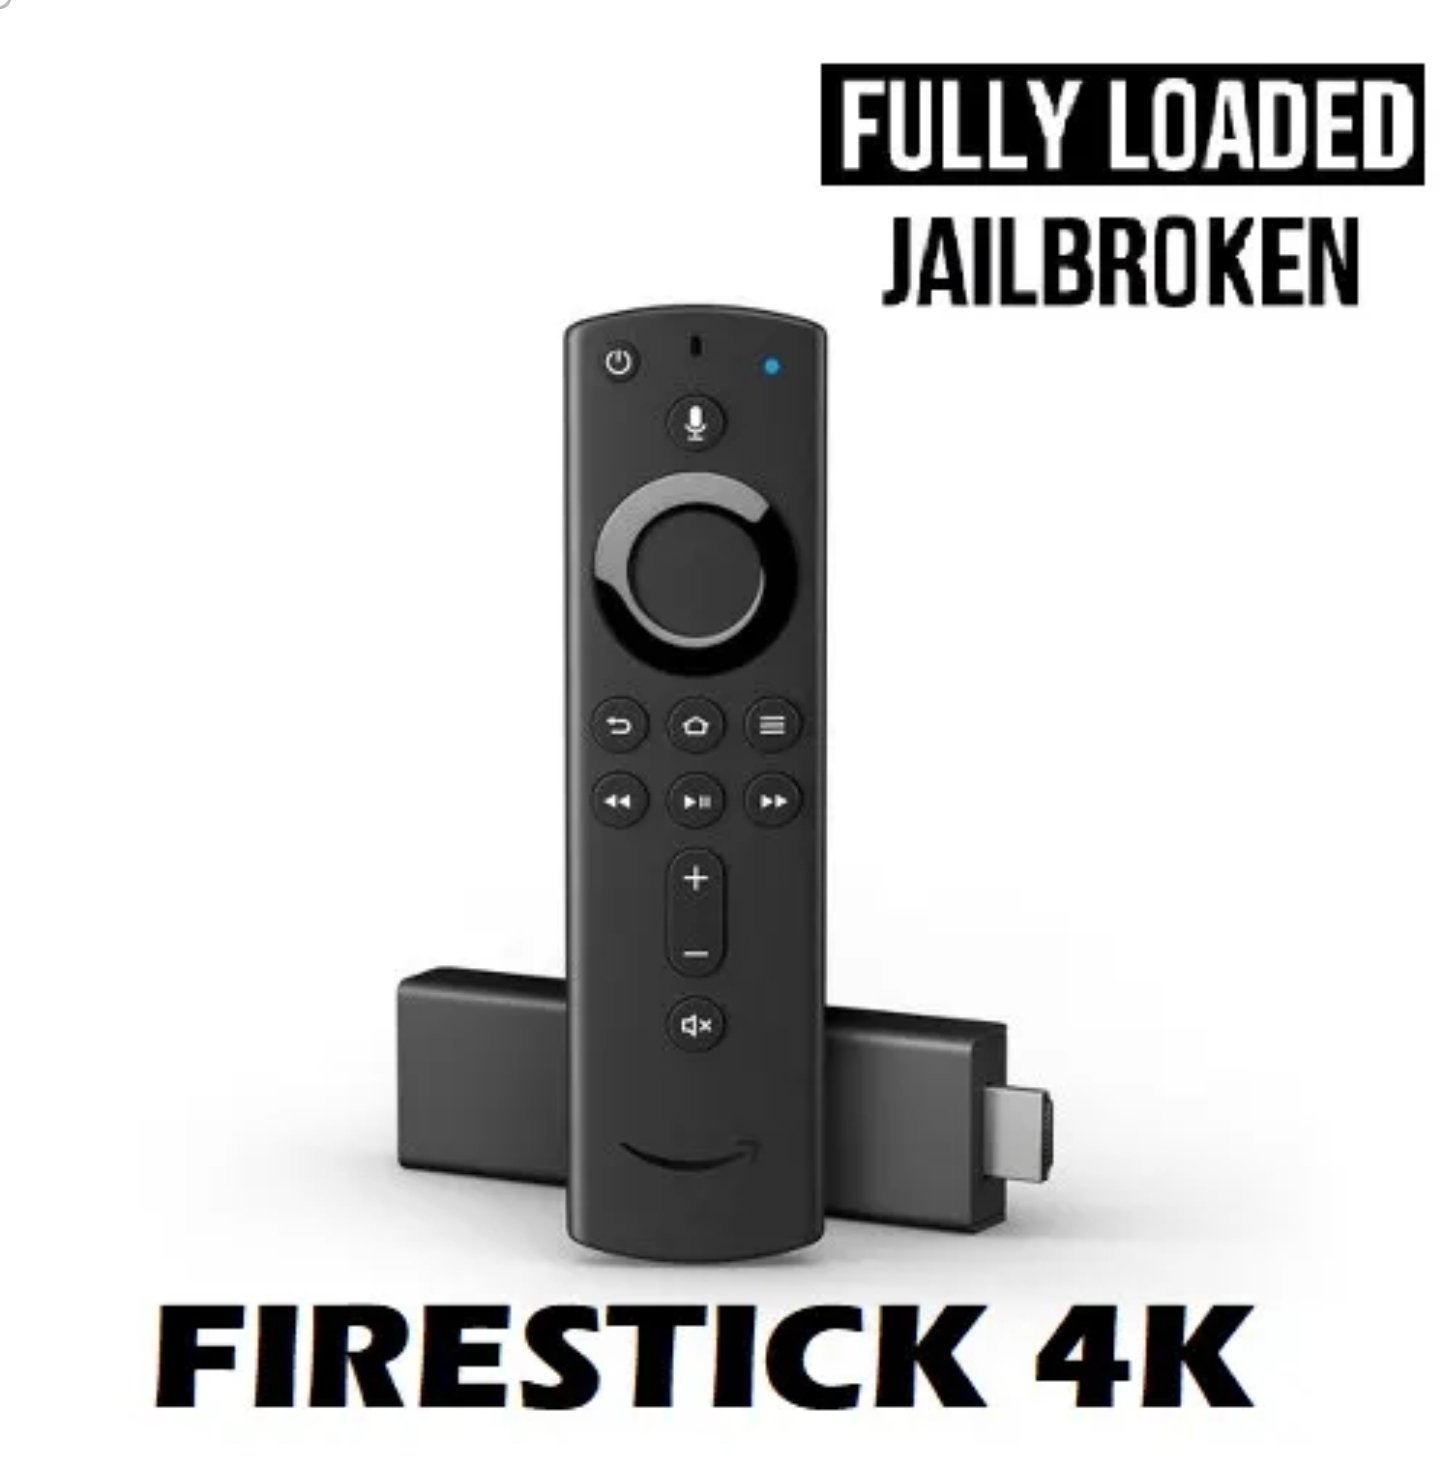 jailbroken firestick